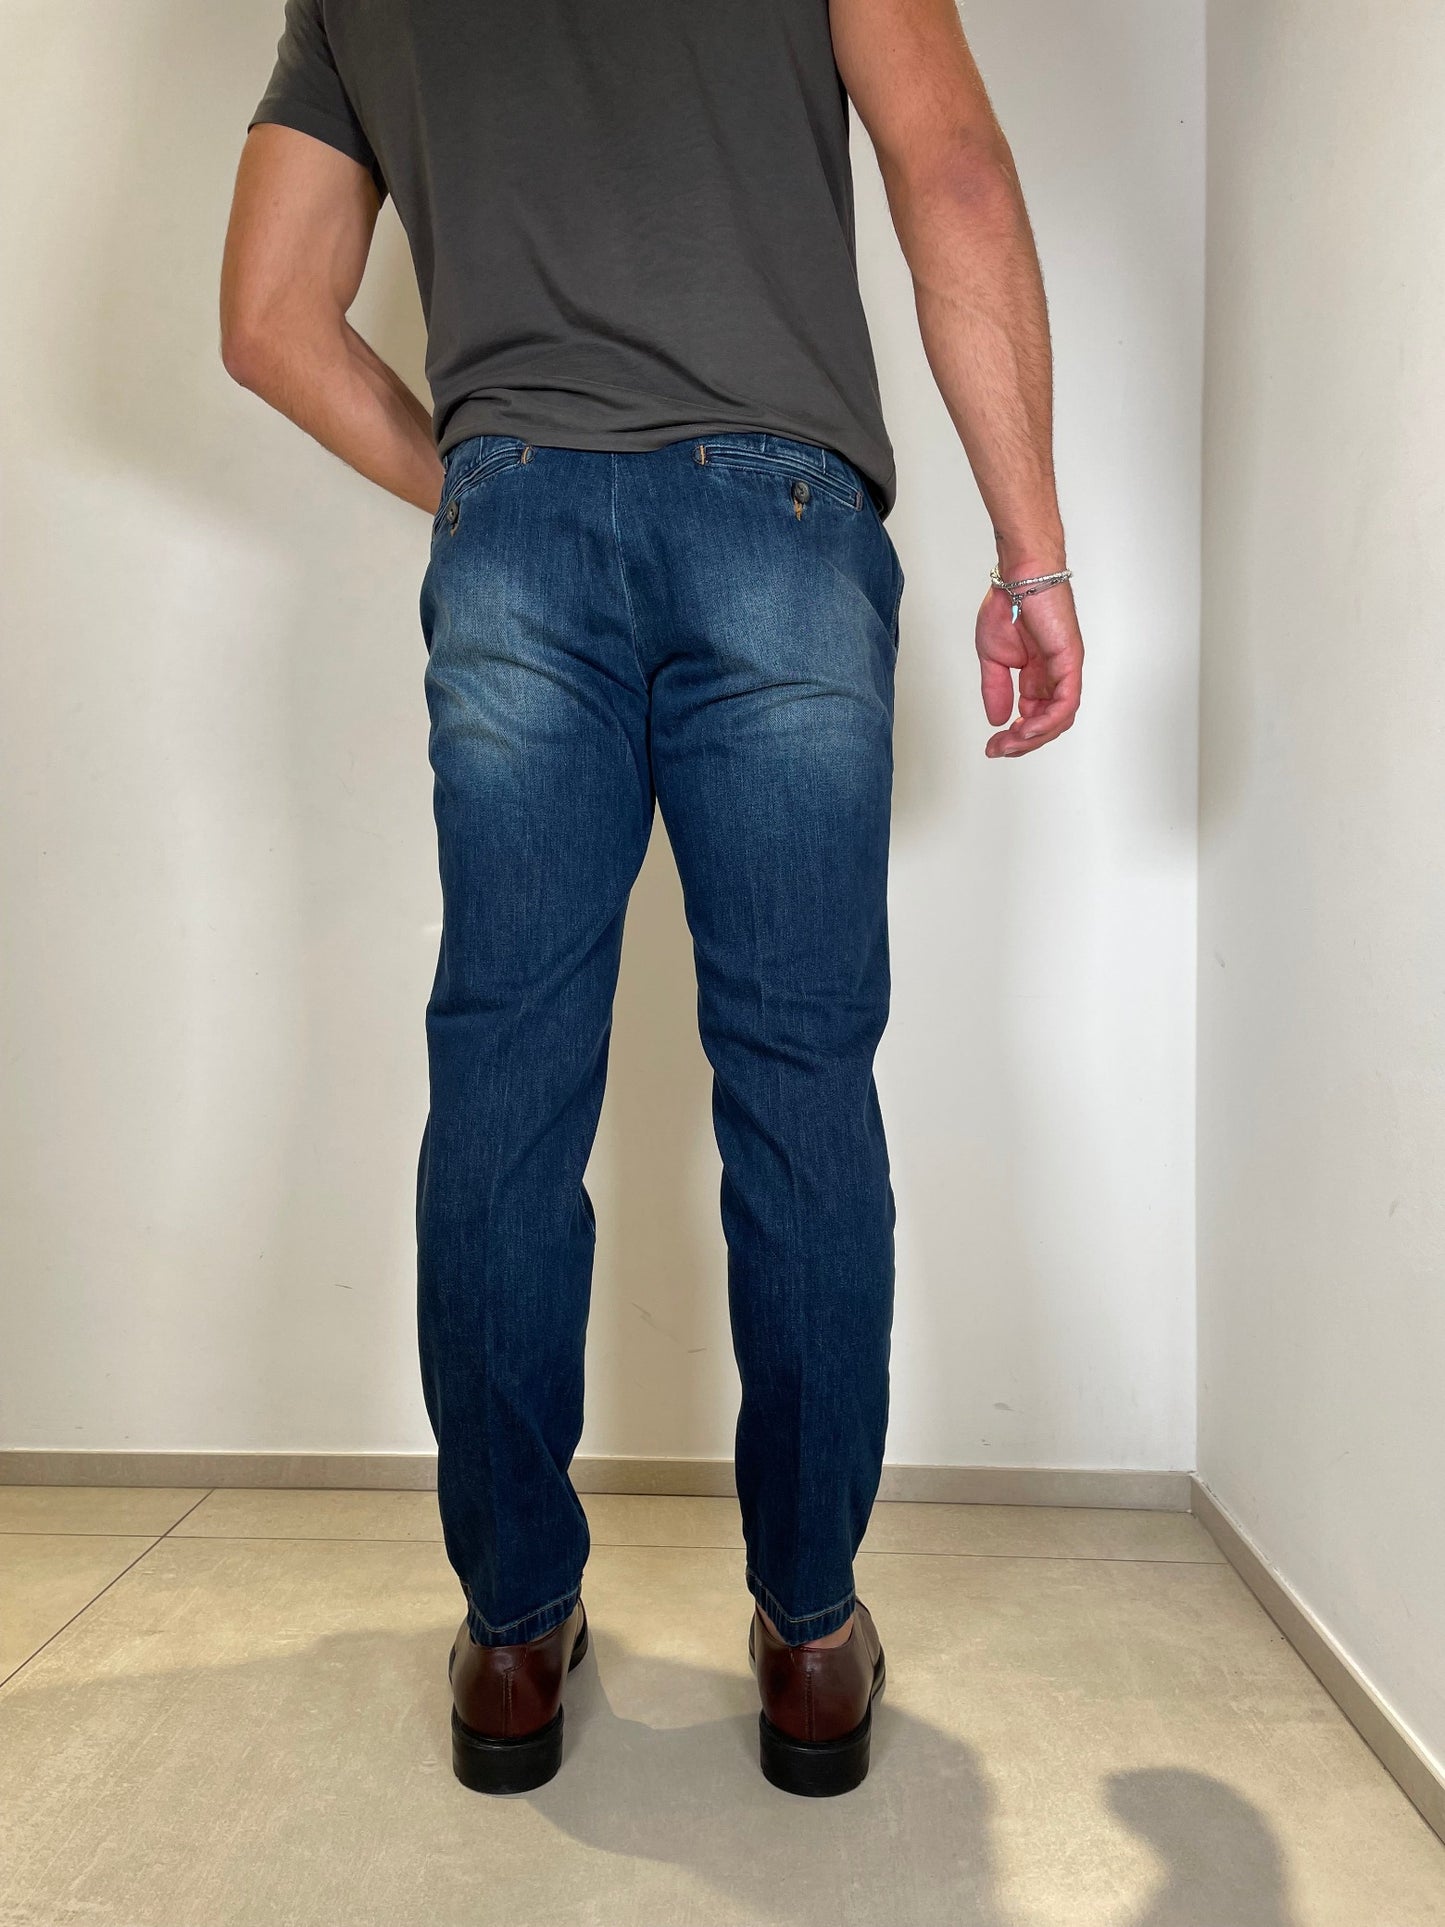 Tom Merritt Jeans